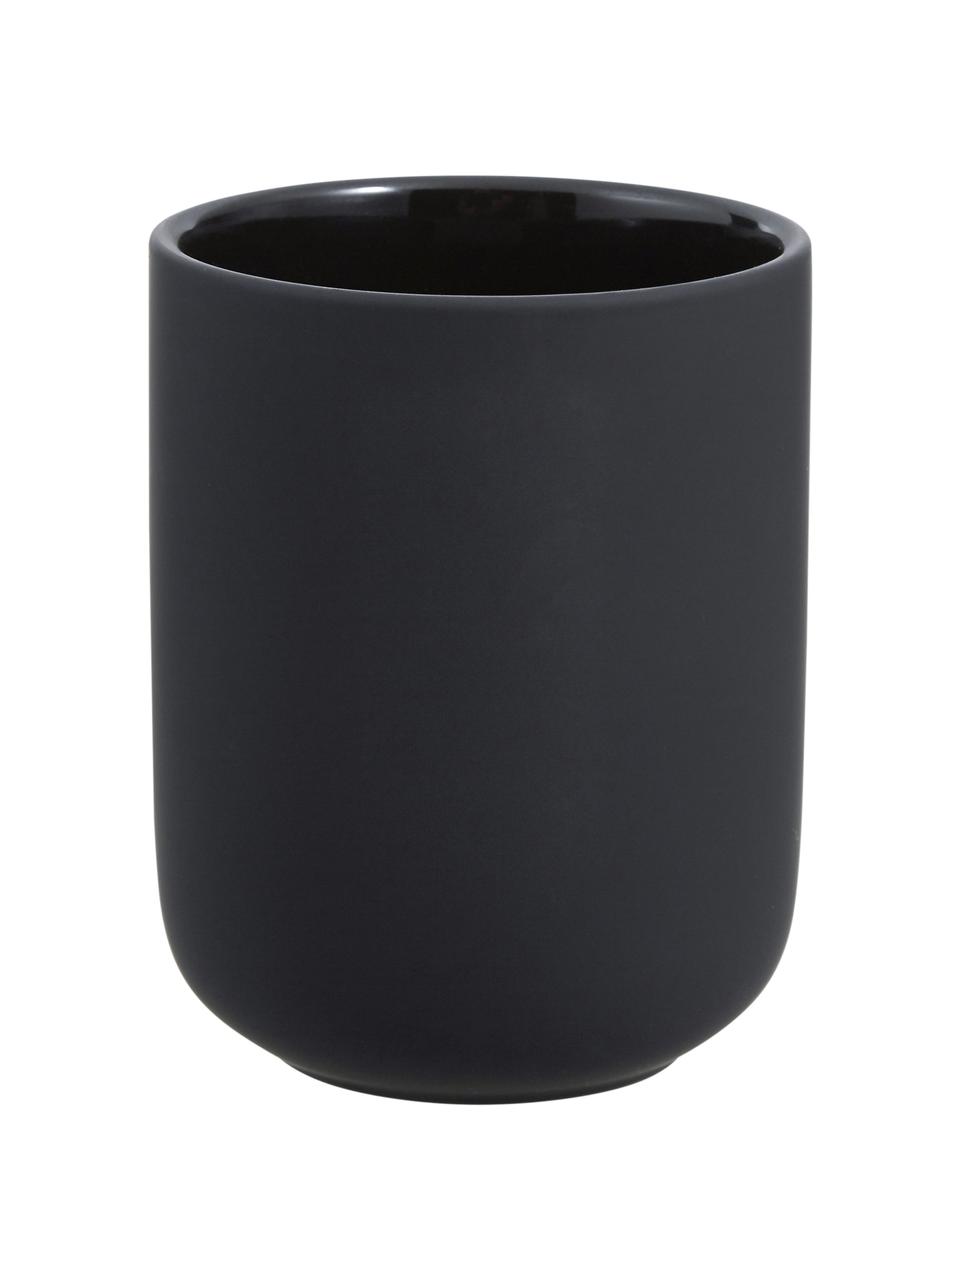 Kubek na szczoteczki z kamionki Ume, Ceramika pokryta miękką w dotyku powłoką (tworzywo sztuczne), Czarny, matowy, Ø 8 x W 10 cm